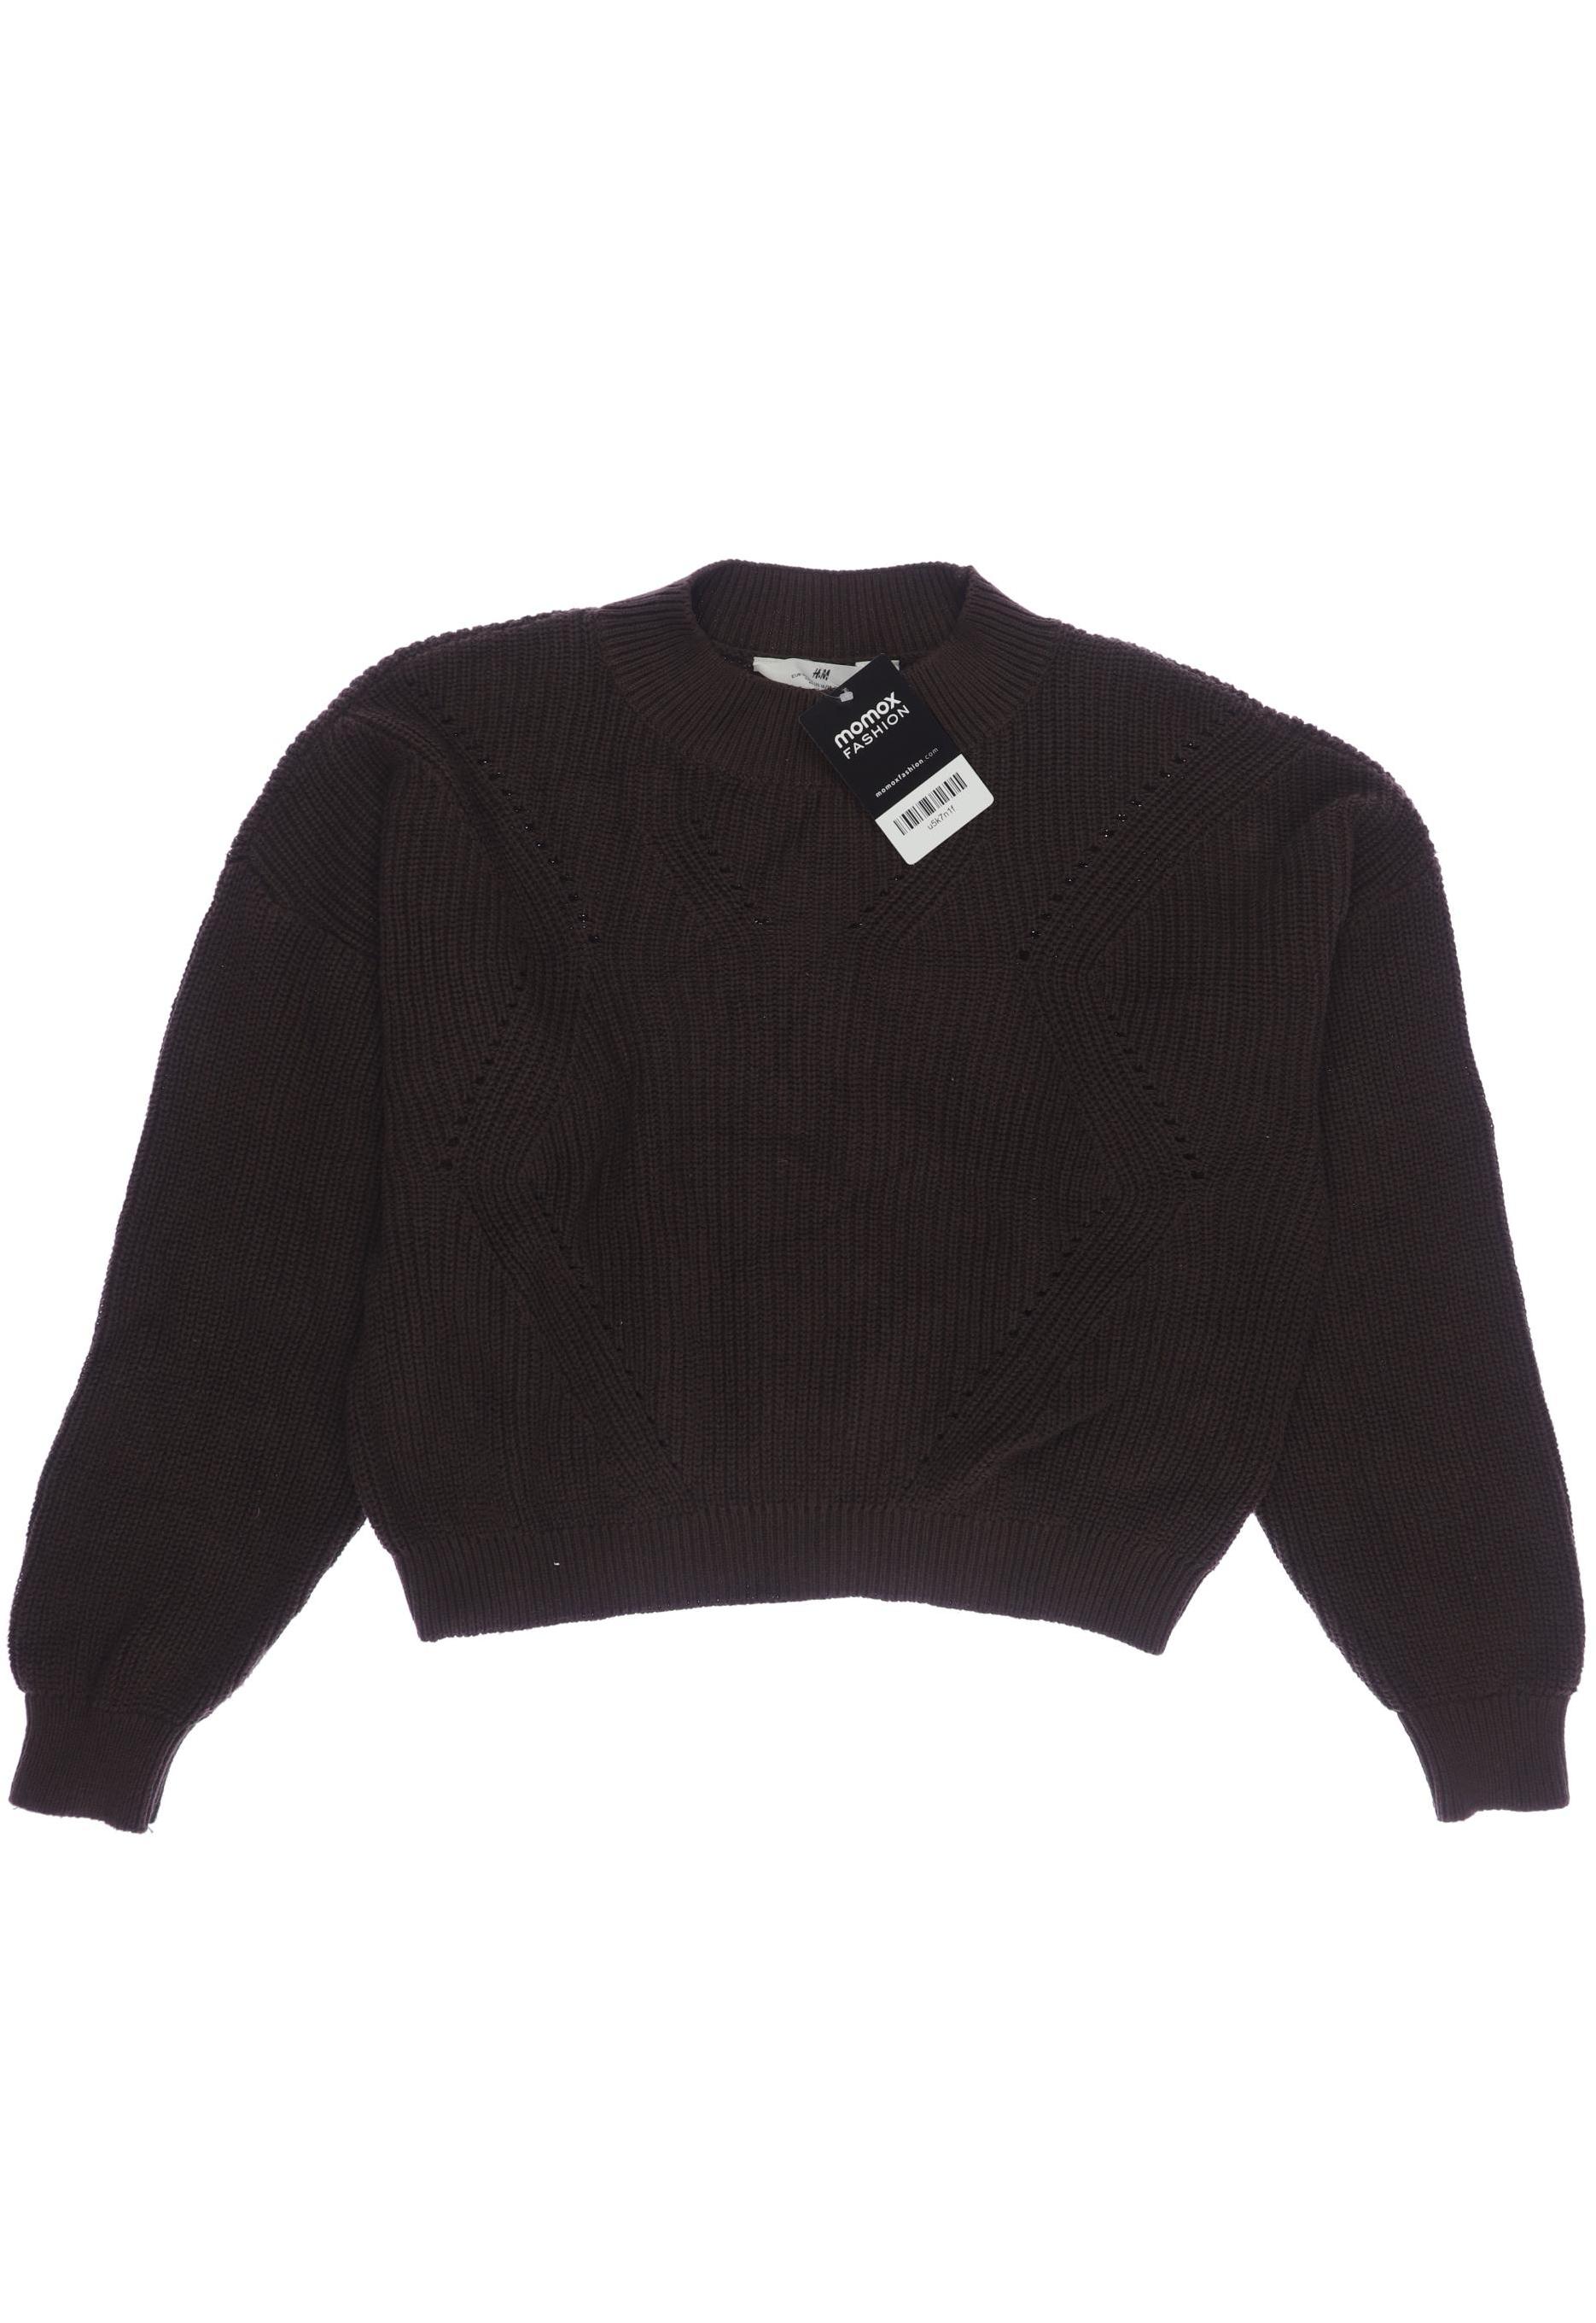 H&M Damen Pullover, braun, Gr. 158 von H&M